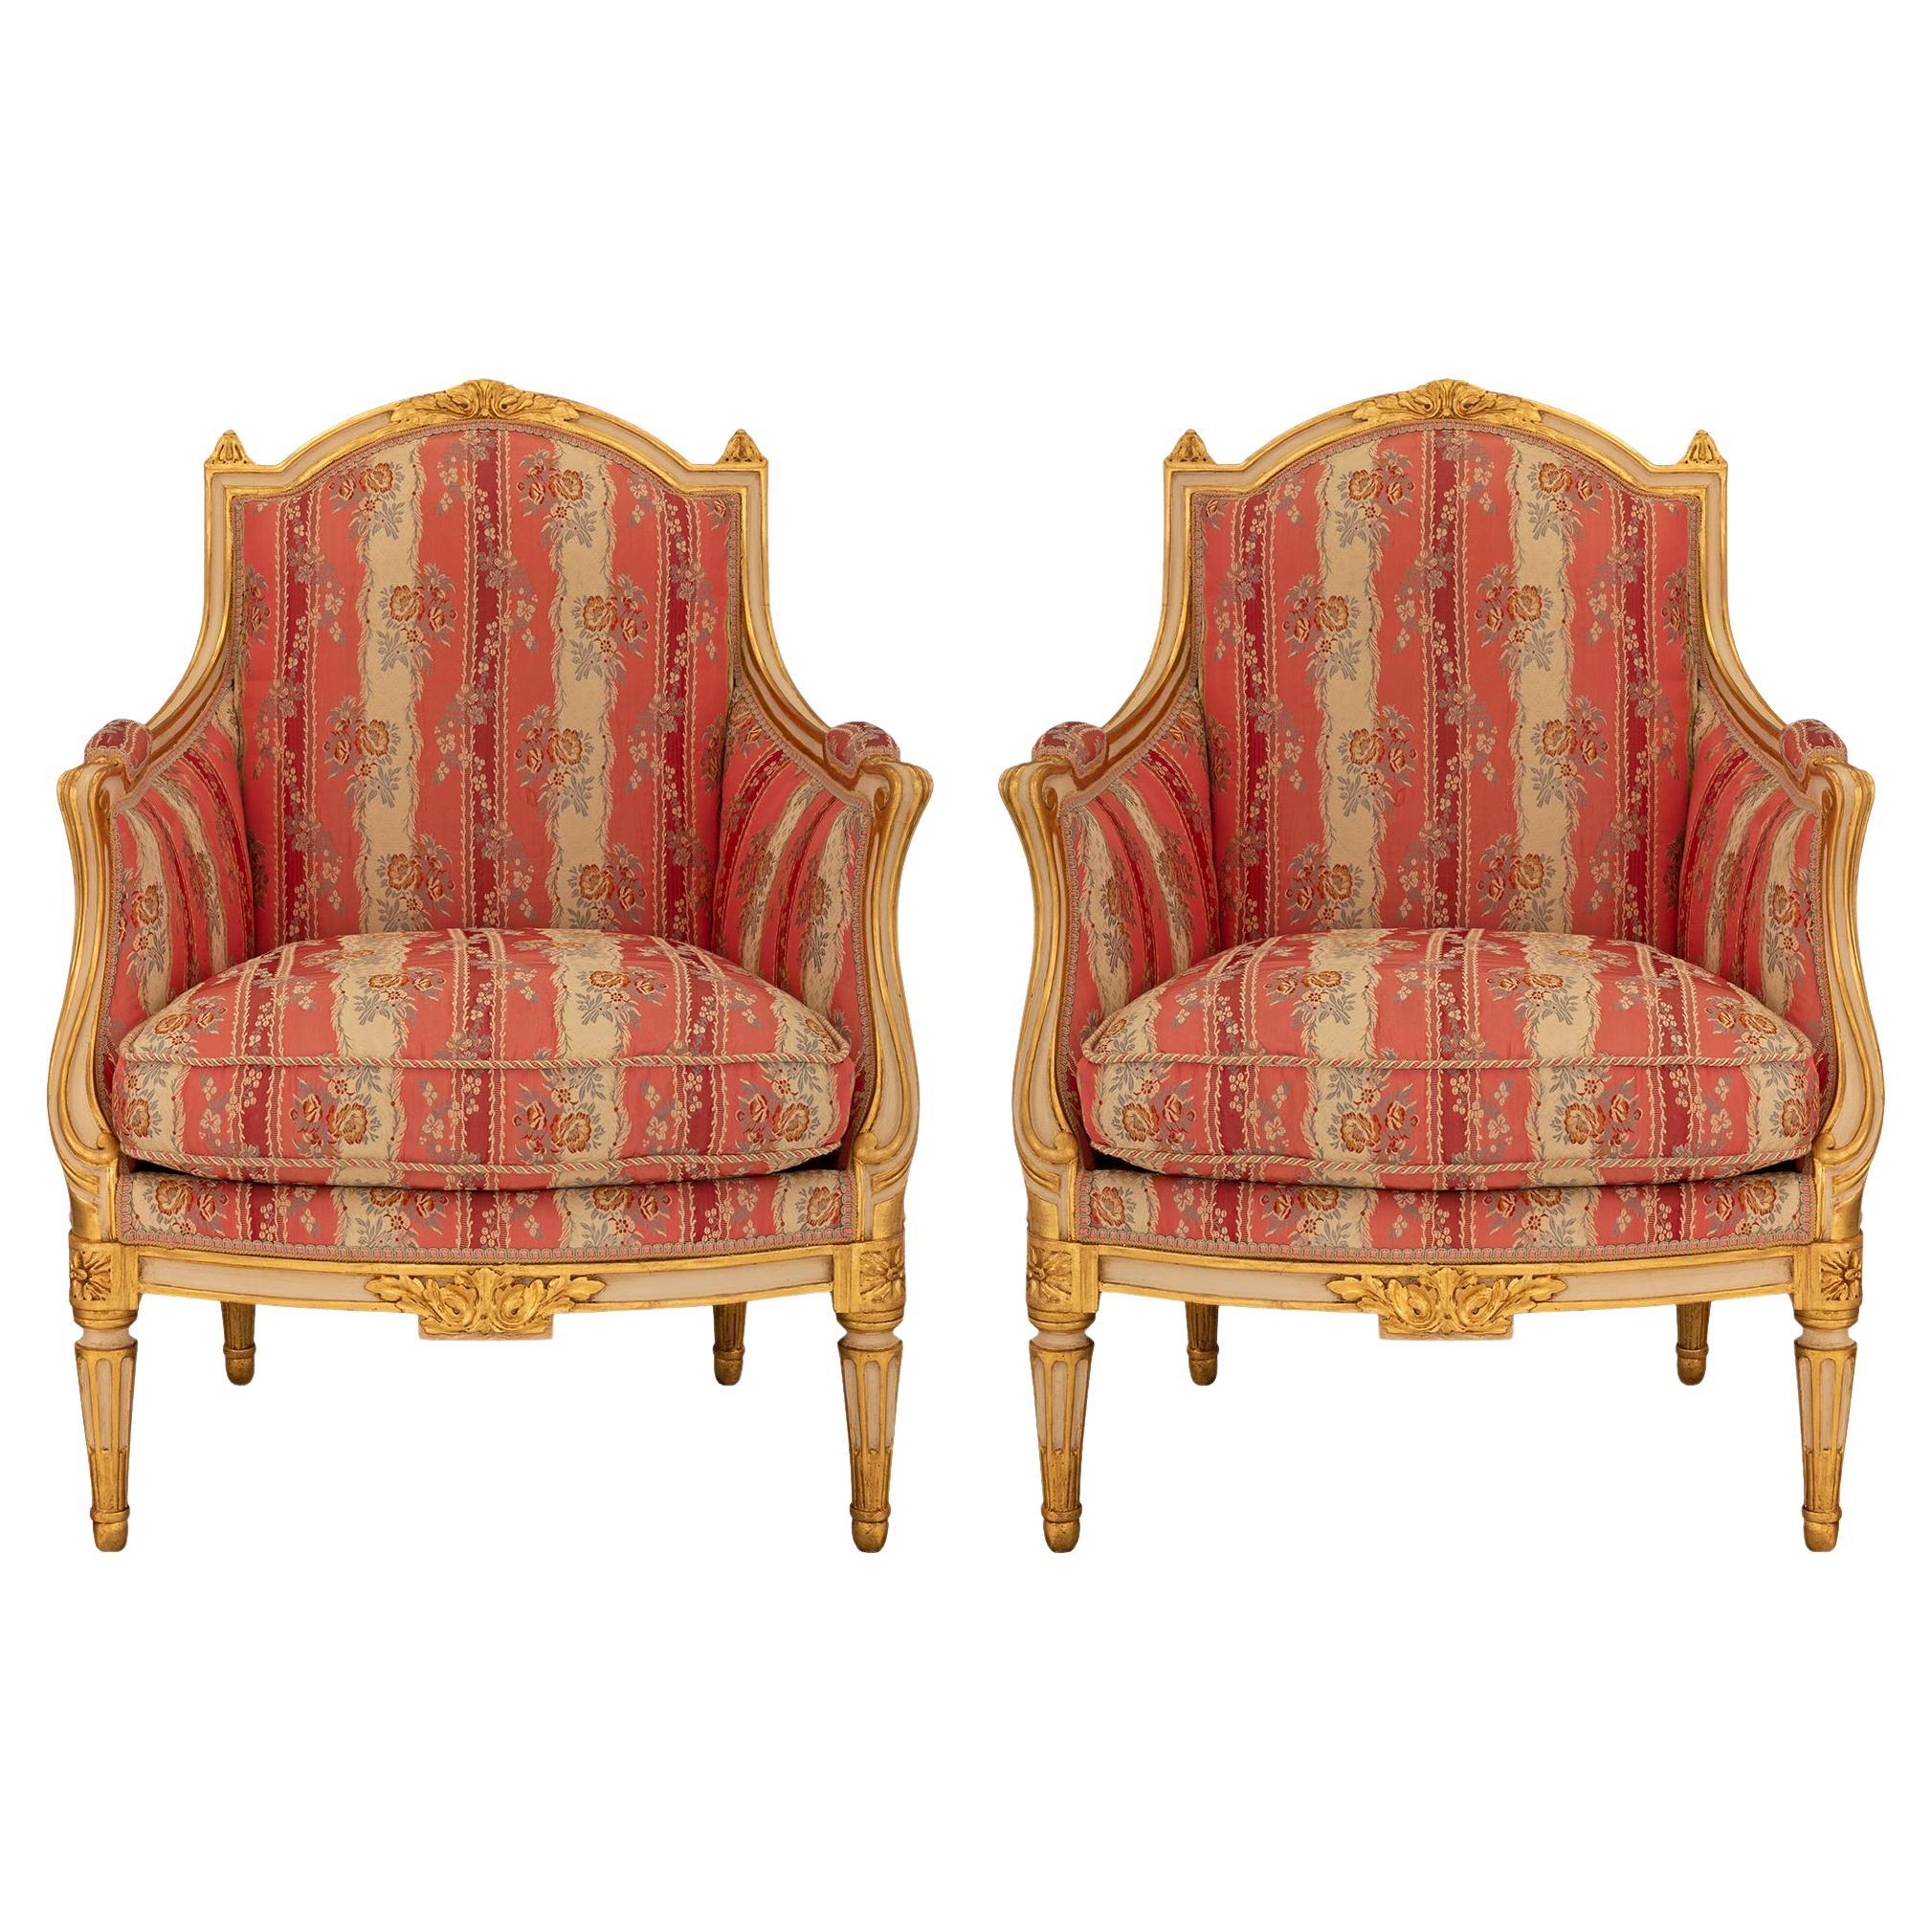 Paar französische Sessel im Stil Louis XVI des 19. Jahrhunderts aus patiniertem und vergoldetem Holz